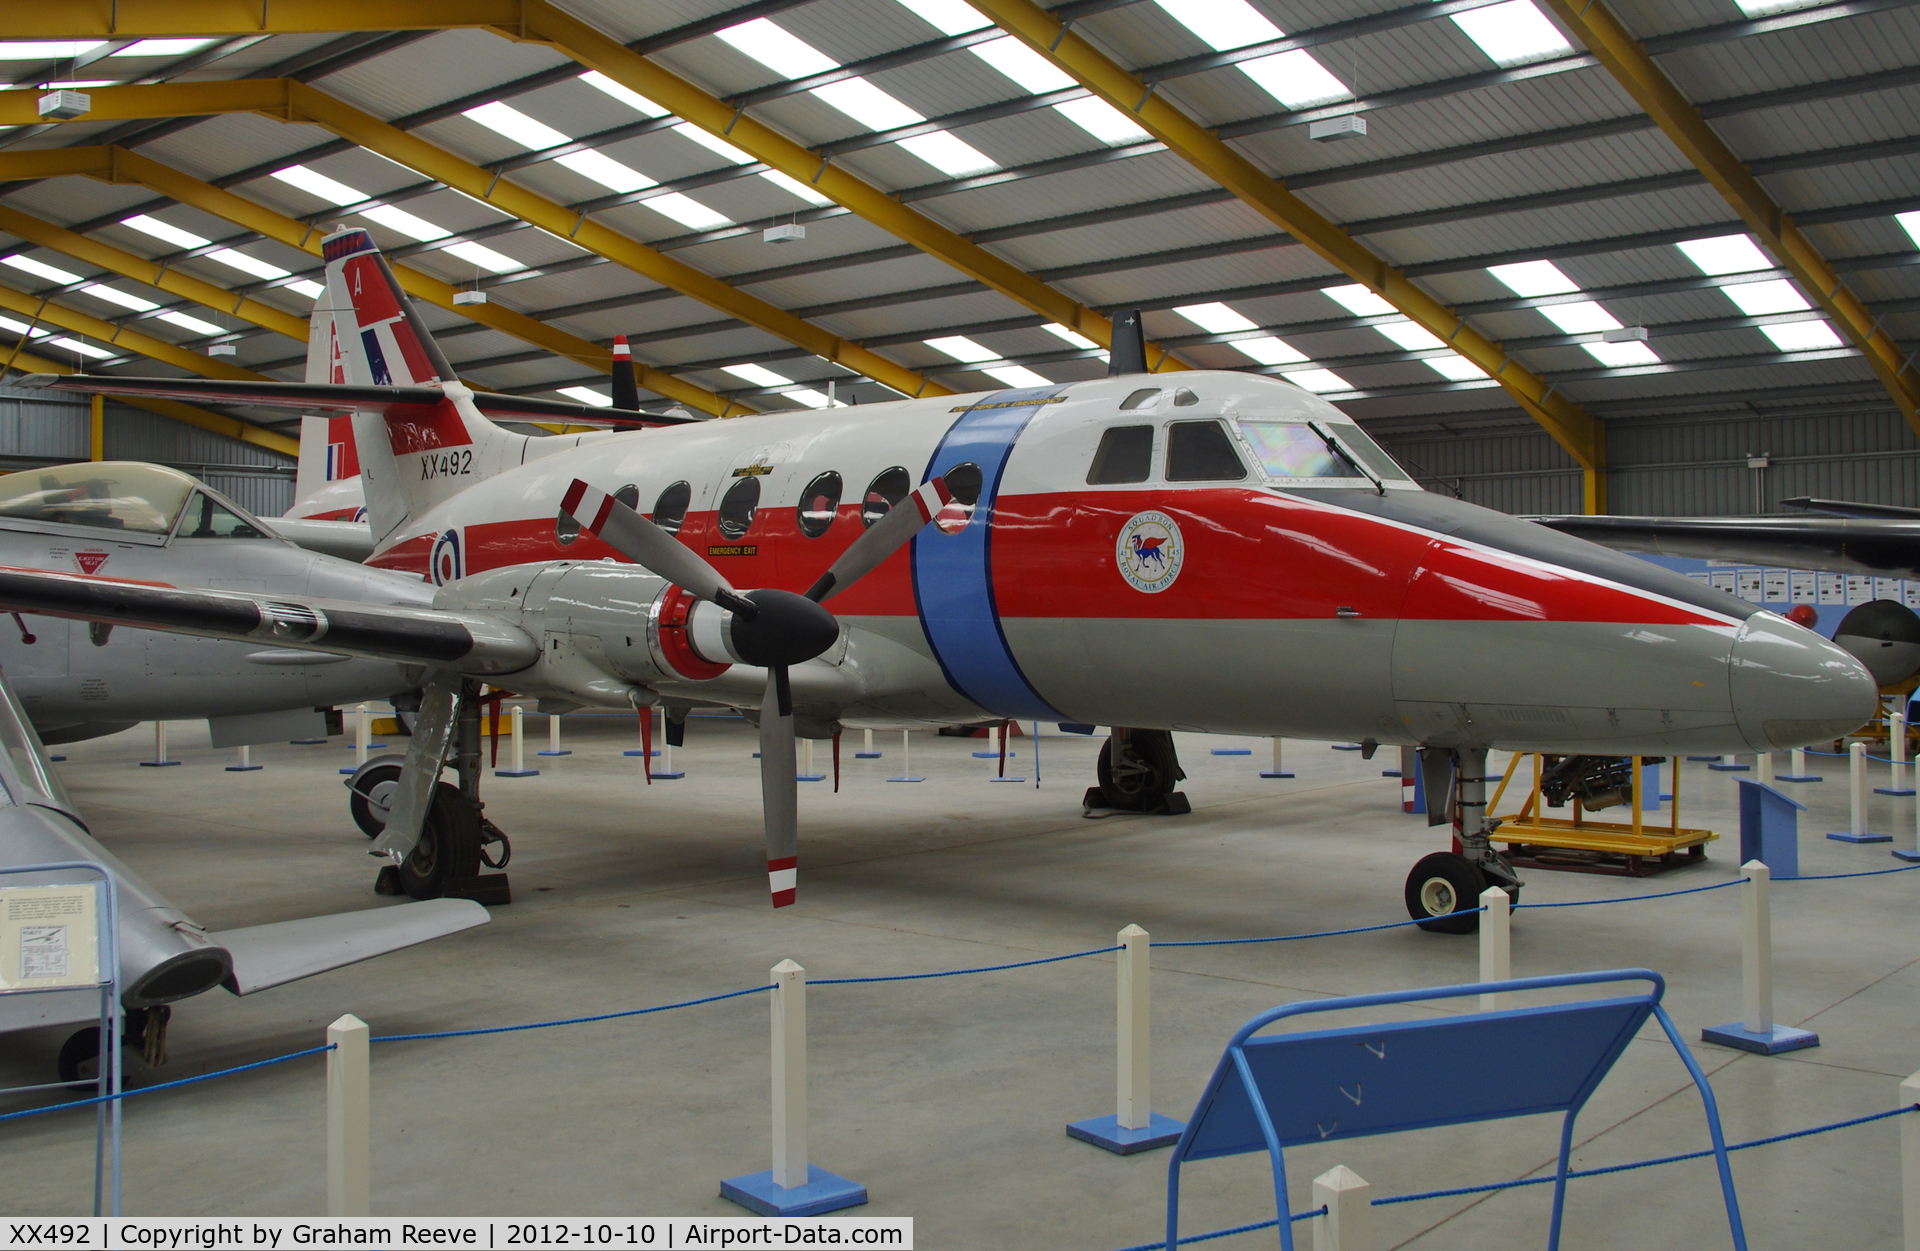 XX492, Scottish Aviation HP-137 Jetstream T.1 C/N 274, Preserved at the Newark Air Museum.